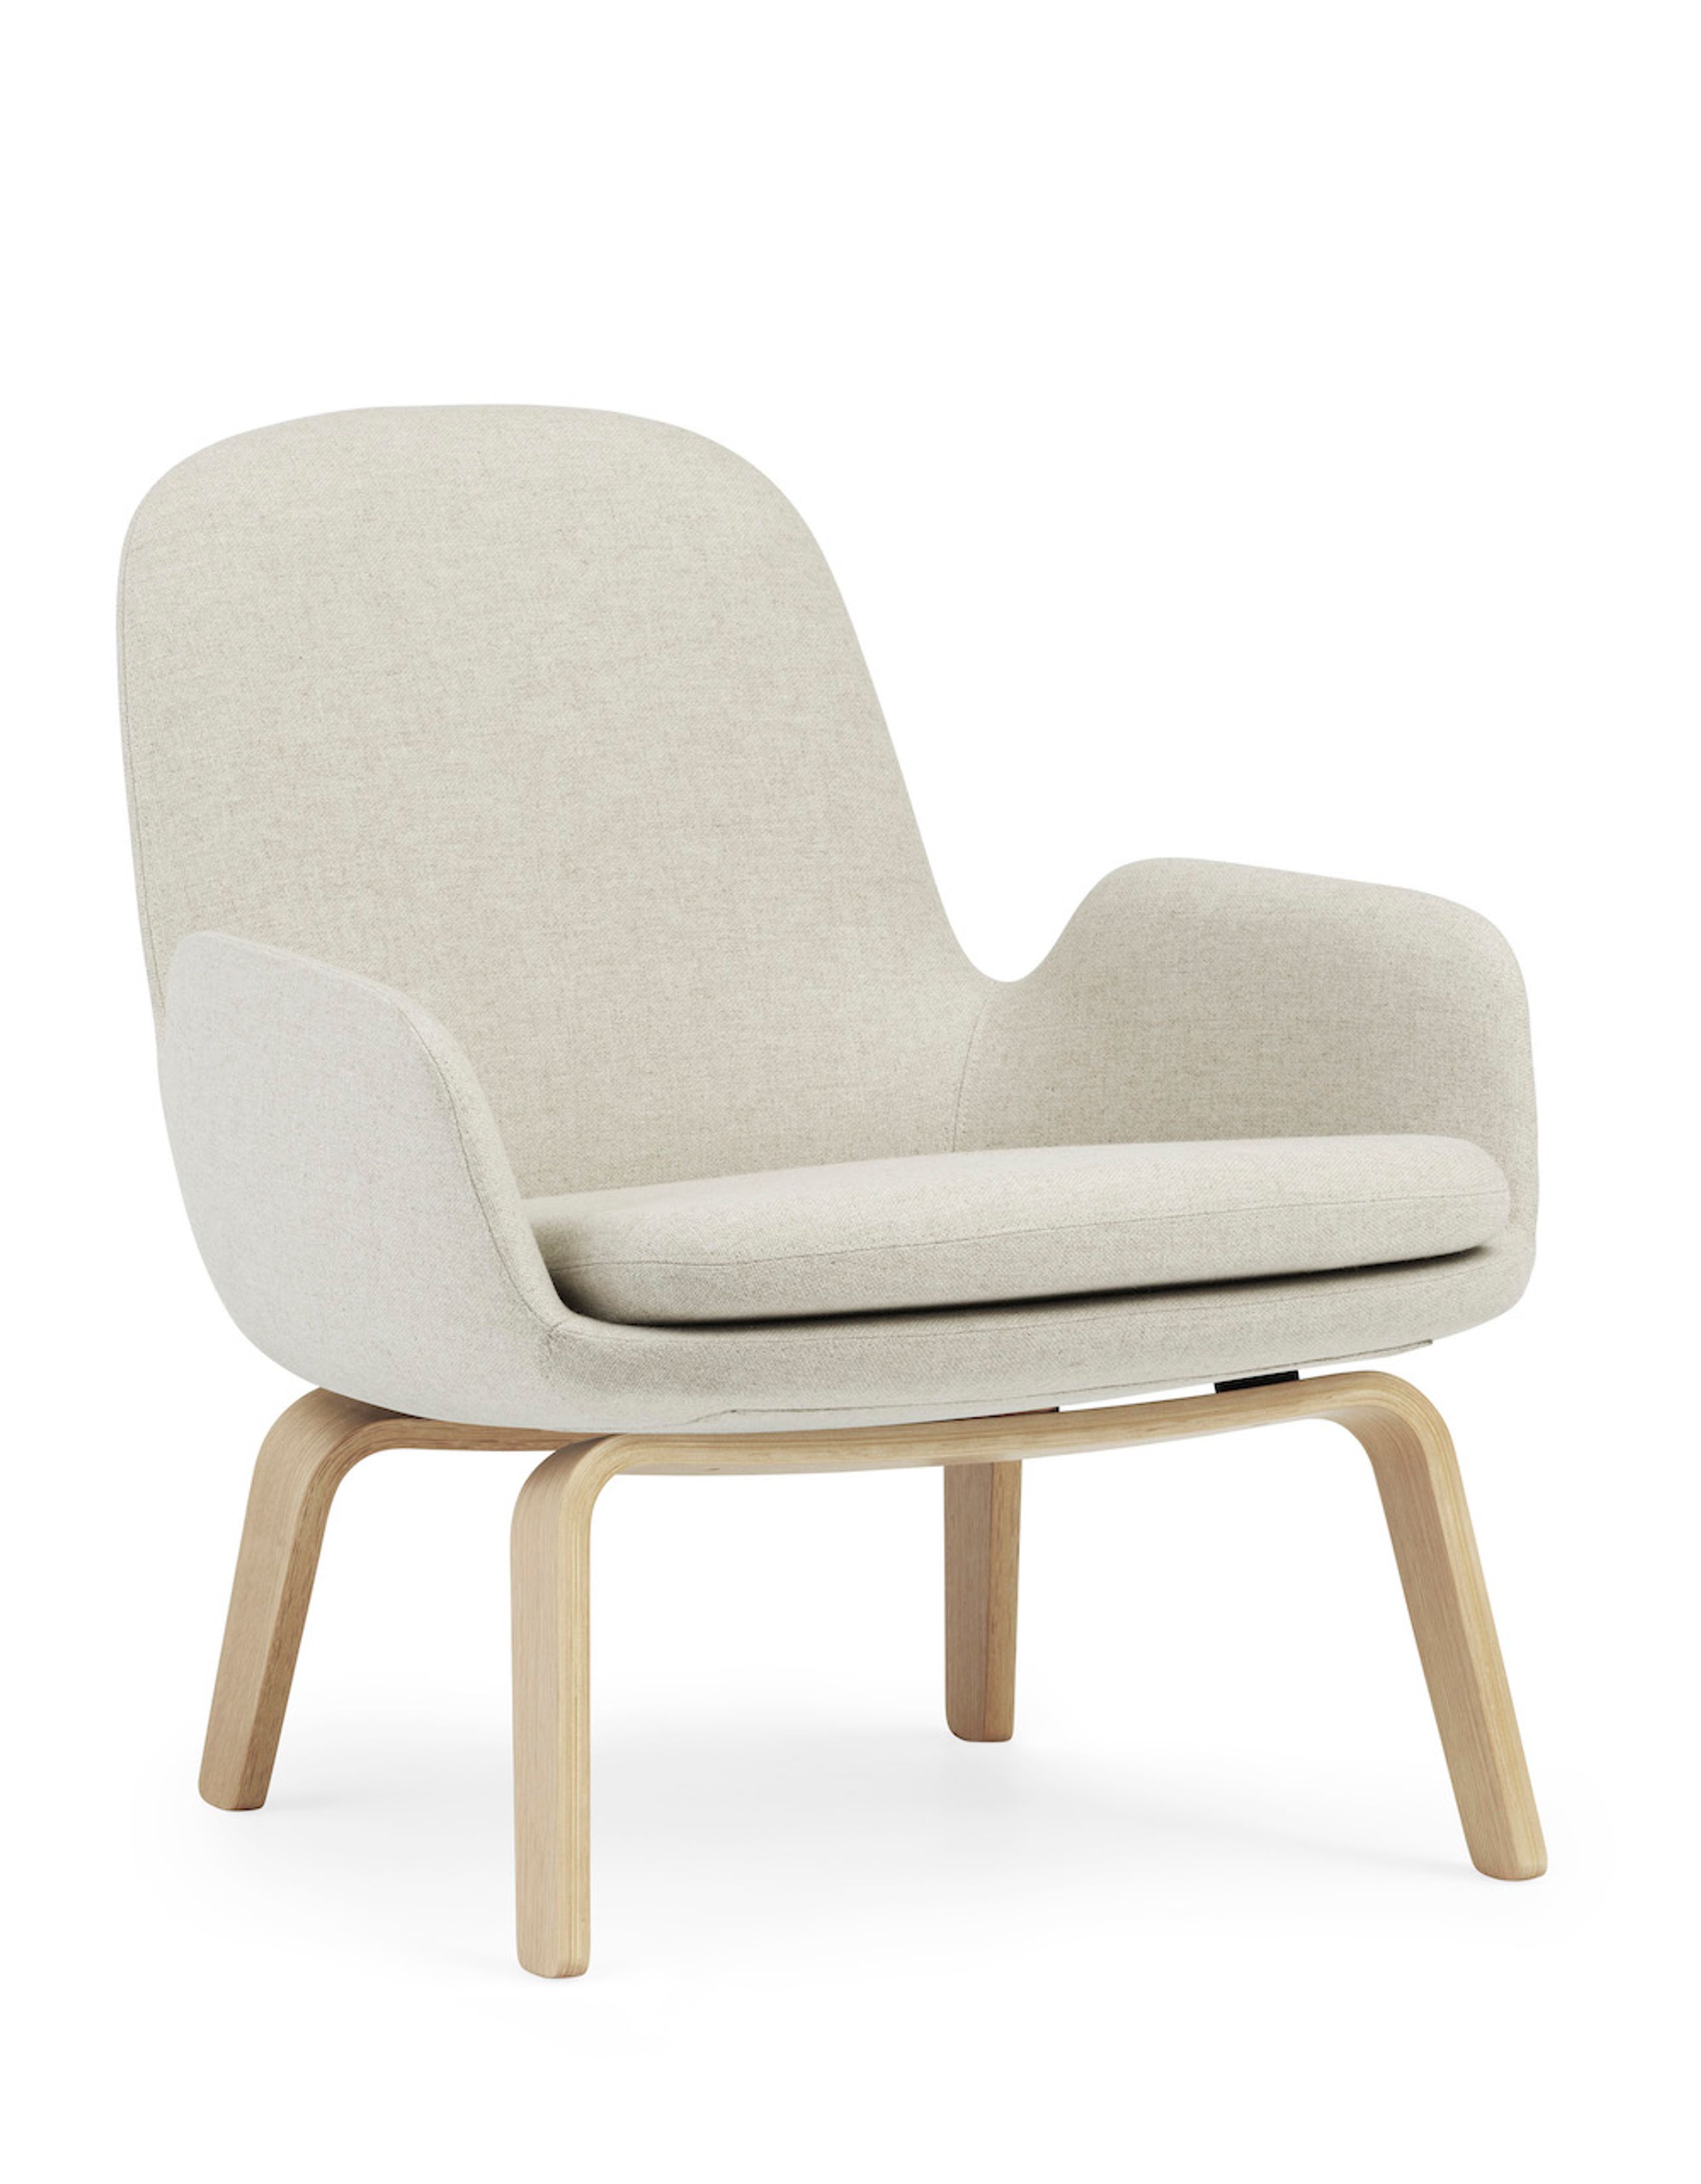 Normann Copenhagen - Fauteuil - Era Lounge Chair Low Wood - Stel: Eg /Main Line flax: MLF20 (Upminster, sand)